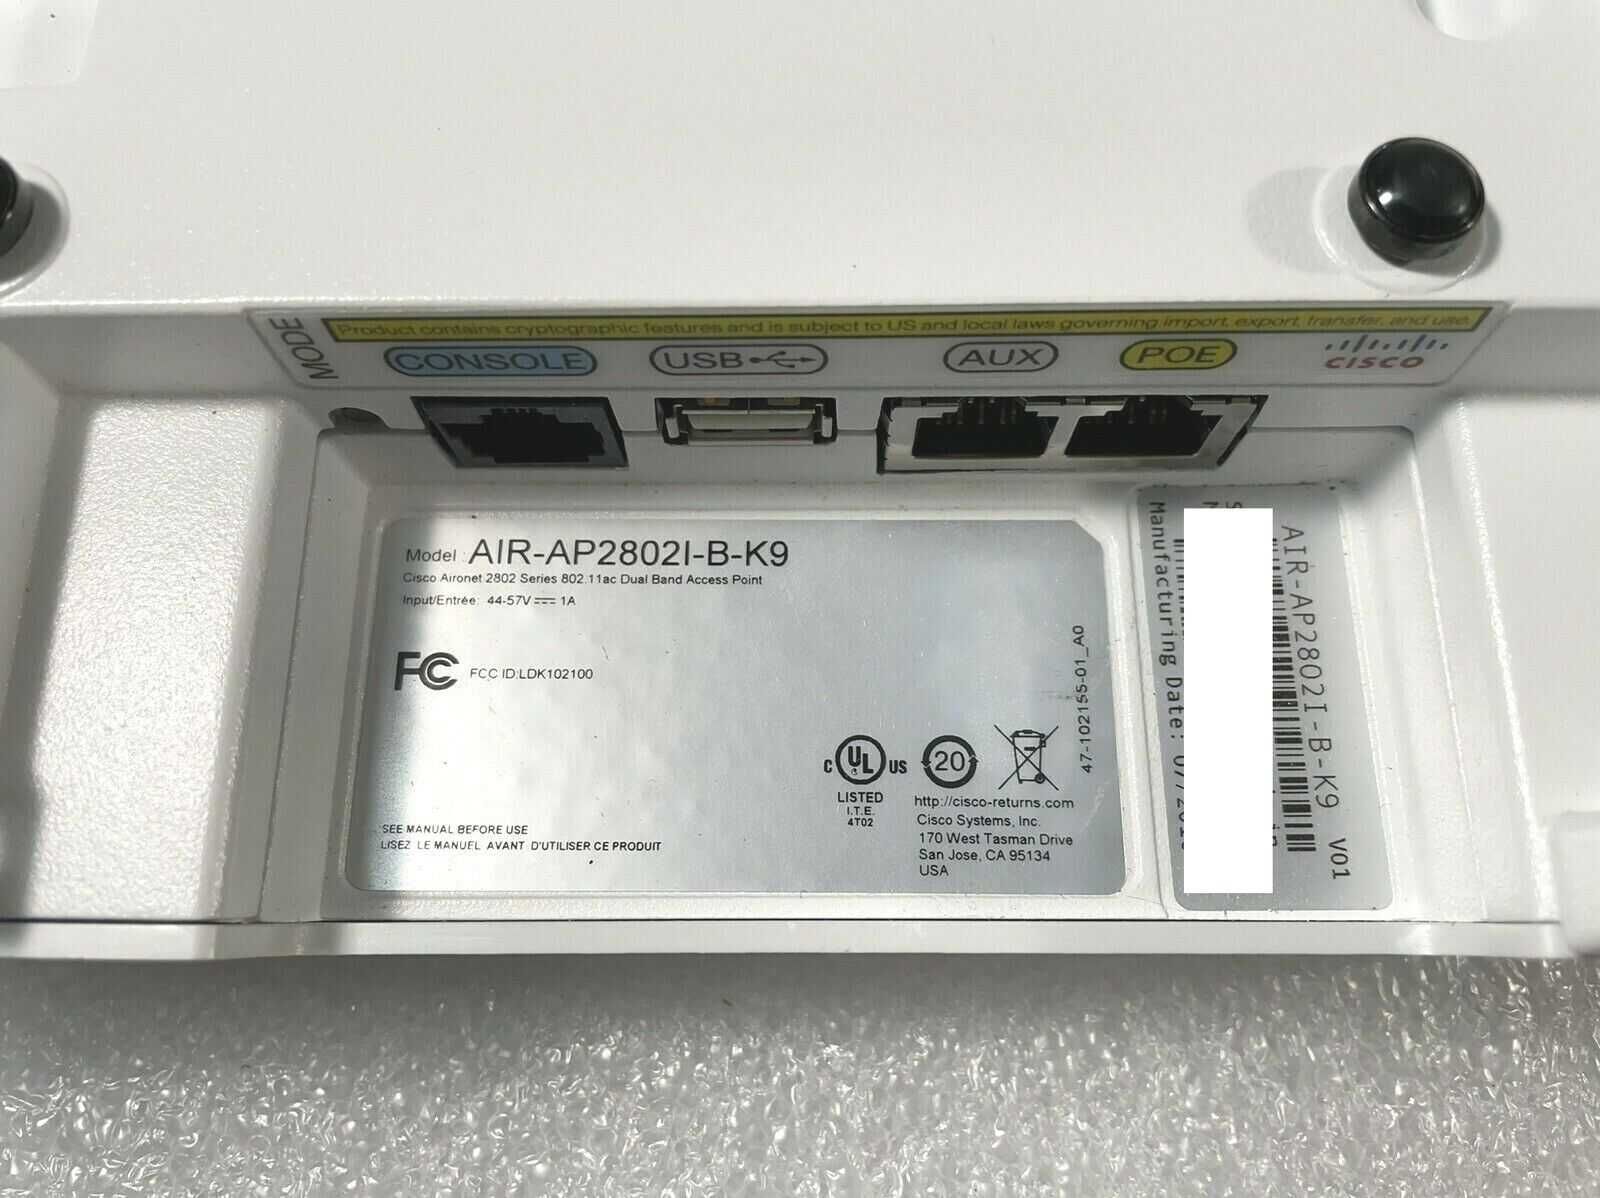 Cisco AIR-AP2802I-E-K9